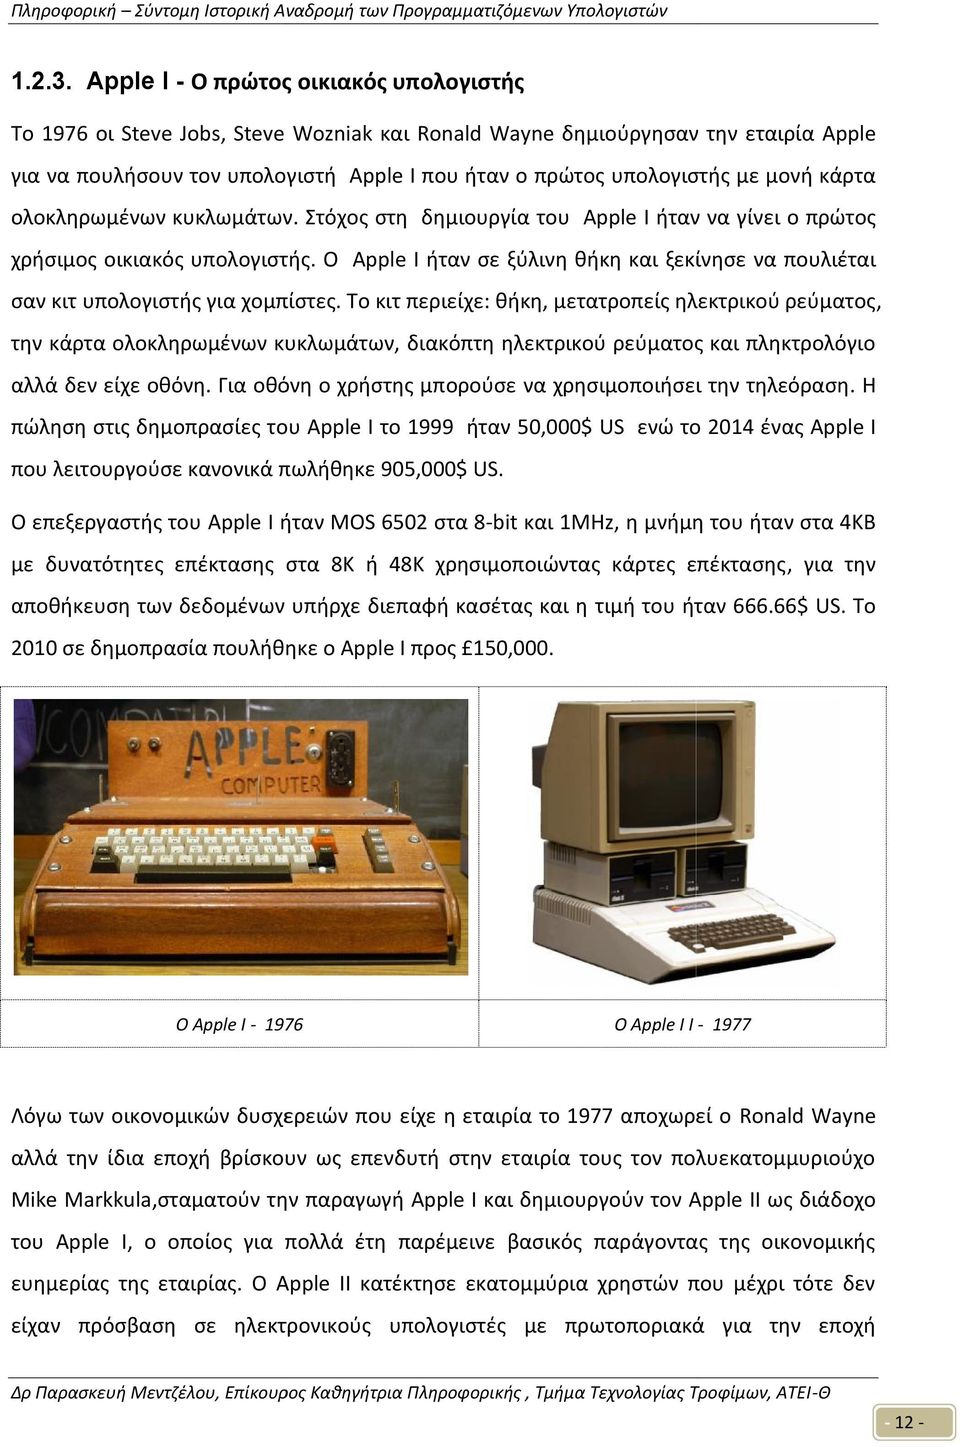 μονή κάρτα ολοκληρωμένων κυκλωμάτων. Στόχος στη δημιουργία του Apple I ήταν να γίνει ο πρώτος χρήσιμος οικιακός υπολογιστής.